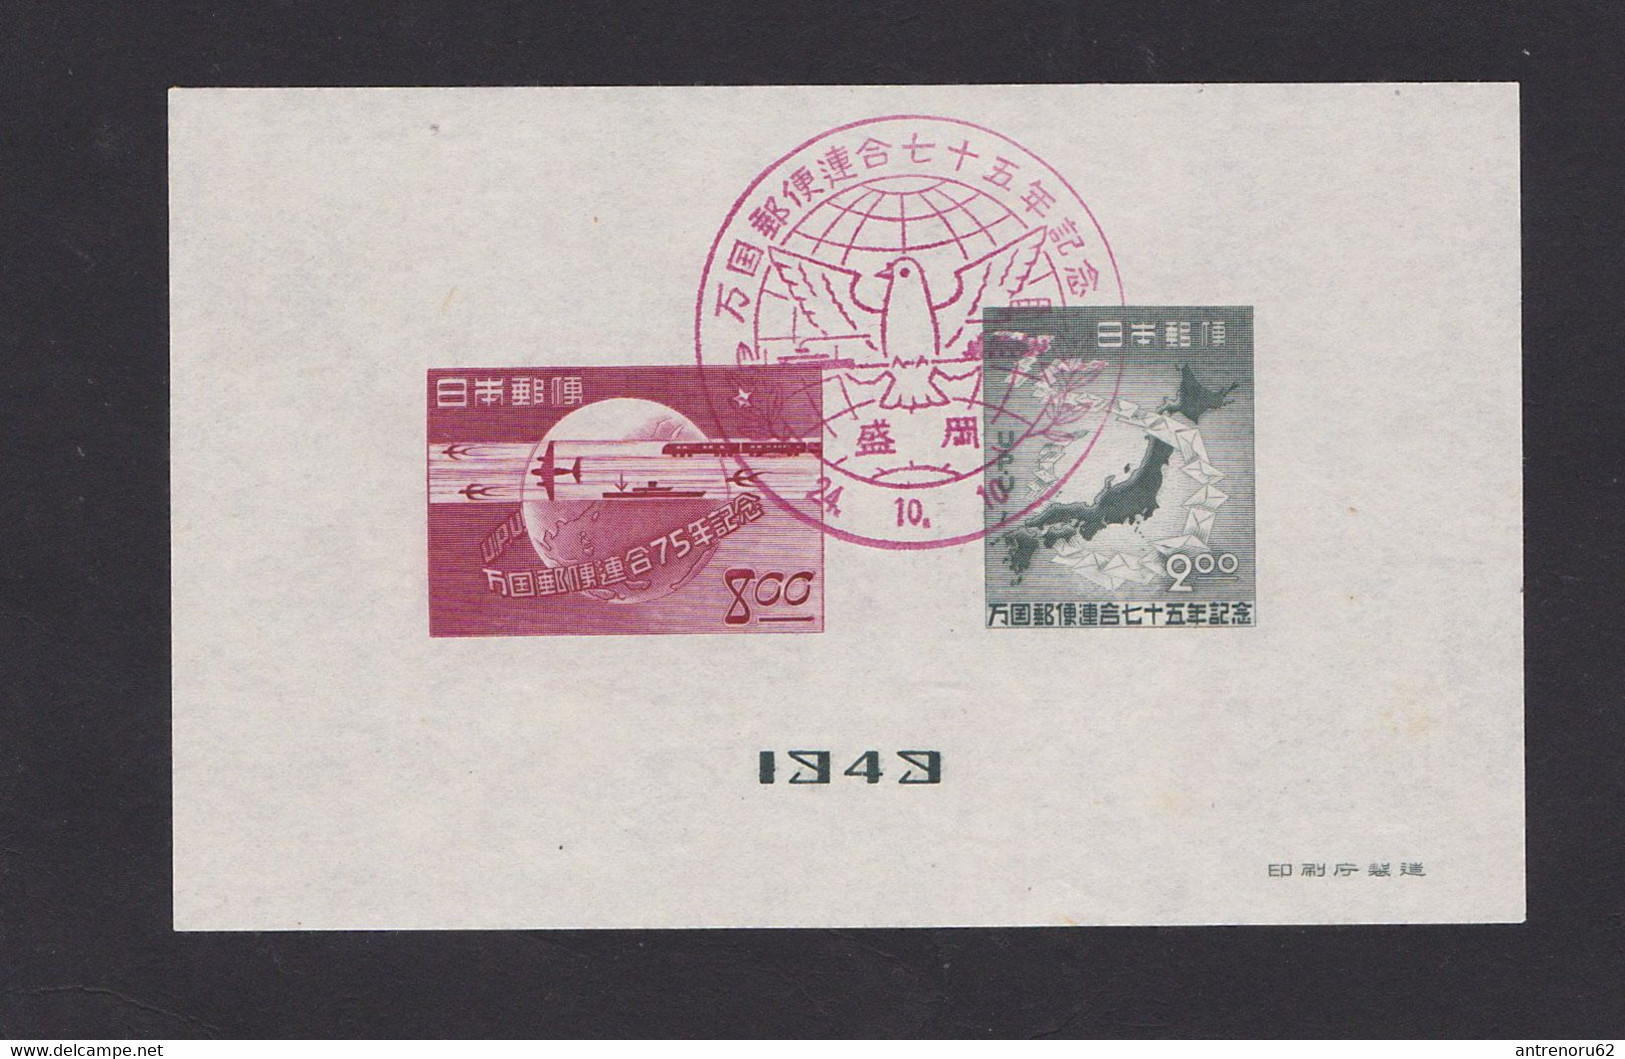 STAMPS-JAPAN-1949-UPU-USED-SEE-SCAN - Gebraucht